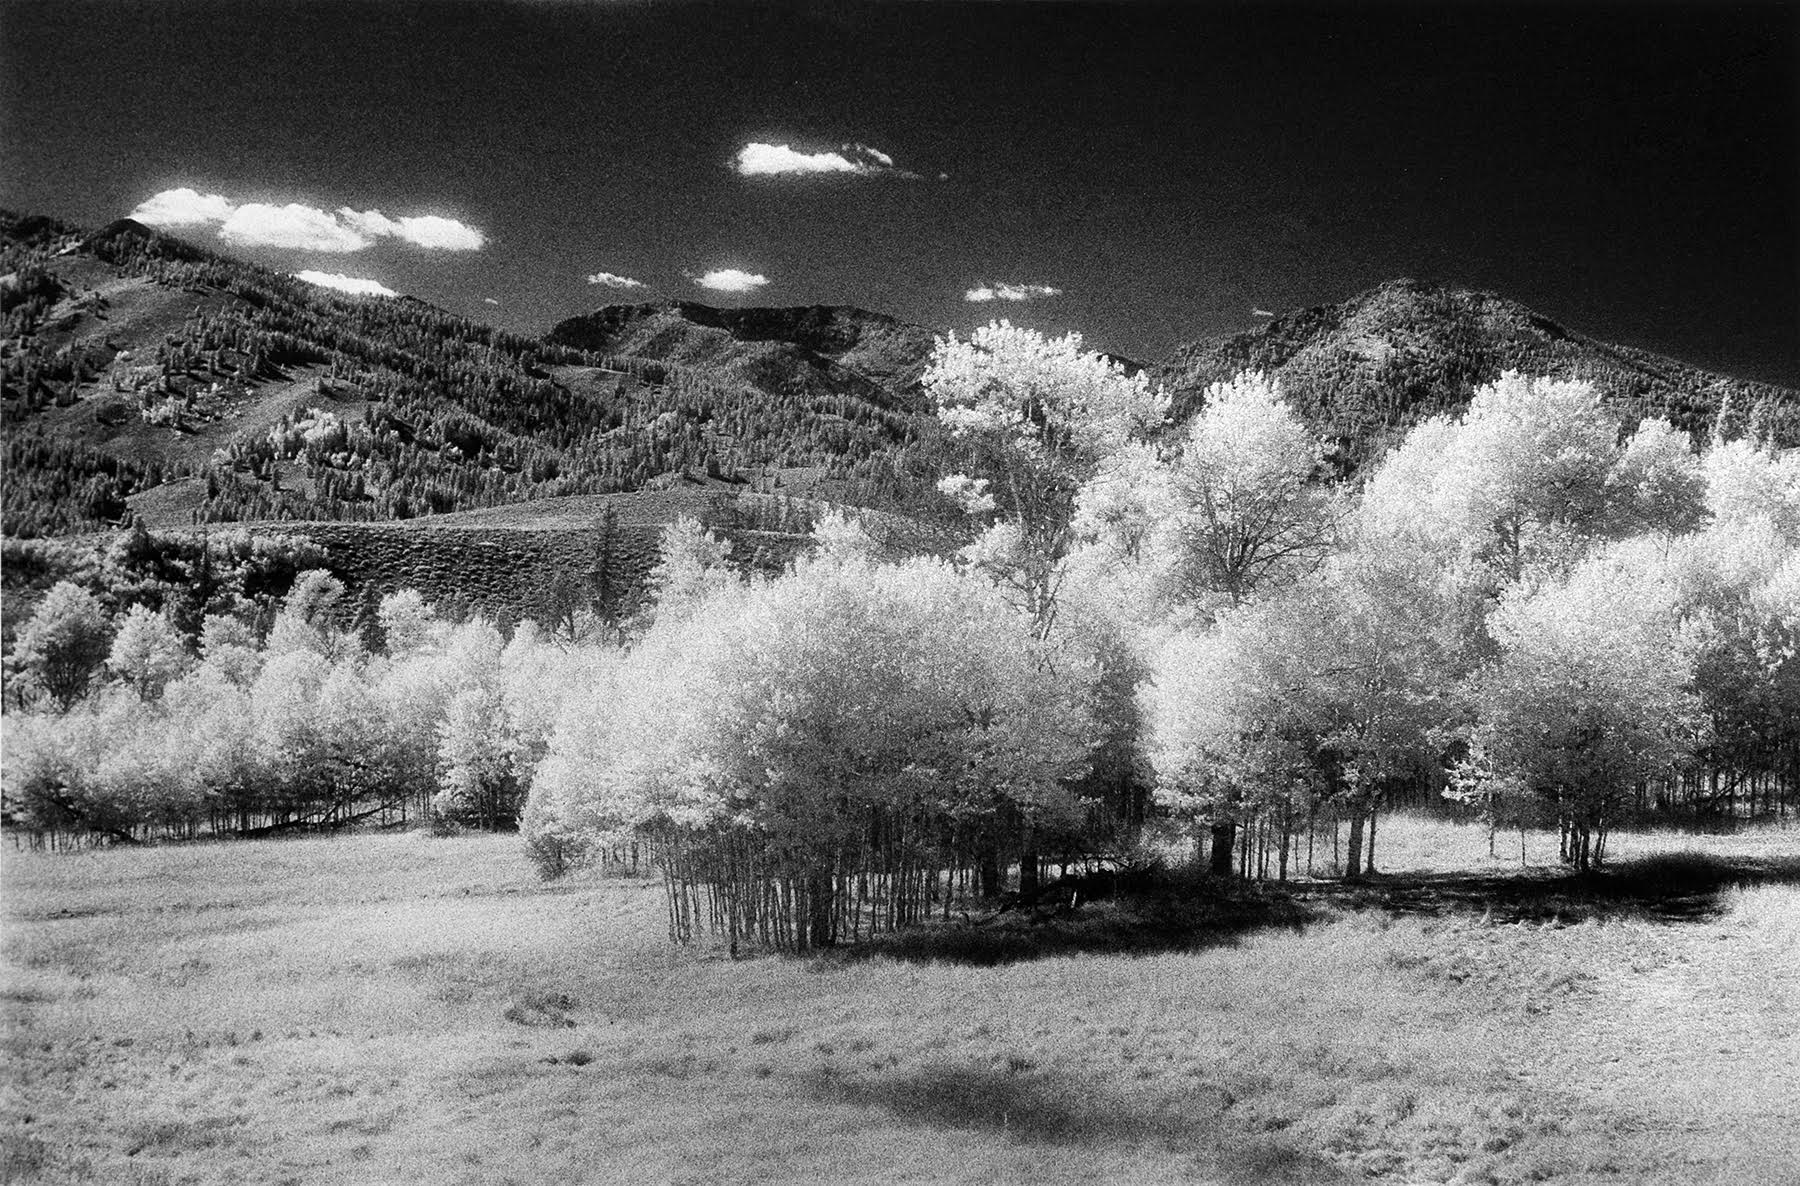 Boulder Aspen Grove…Sept. 2005 Rolleiflex 3003, 50mm Planar, Kodak HIE Infrared